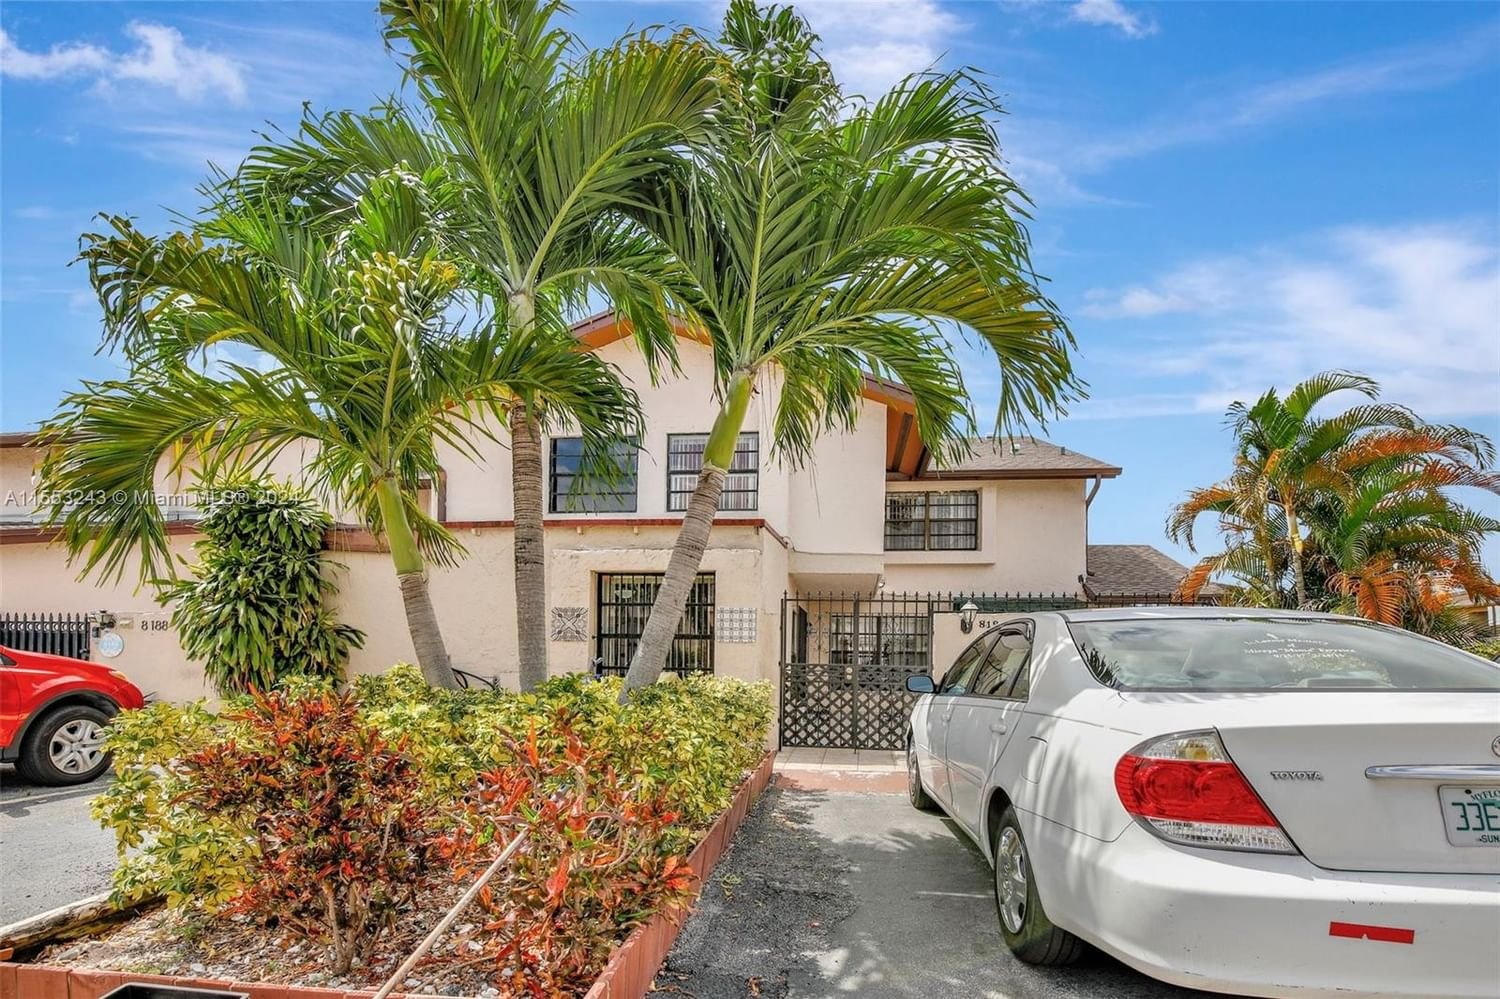 Real estate property located at 8190 98th Ln #121, Miami-Dade County, VILLAS AT SAMARI LAKE COND, Hialeah Gardens, FL